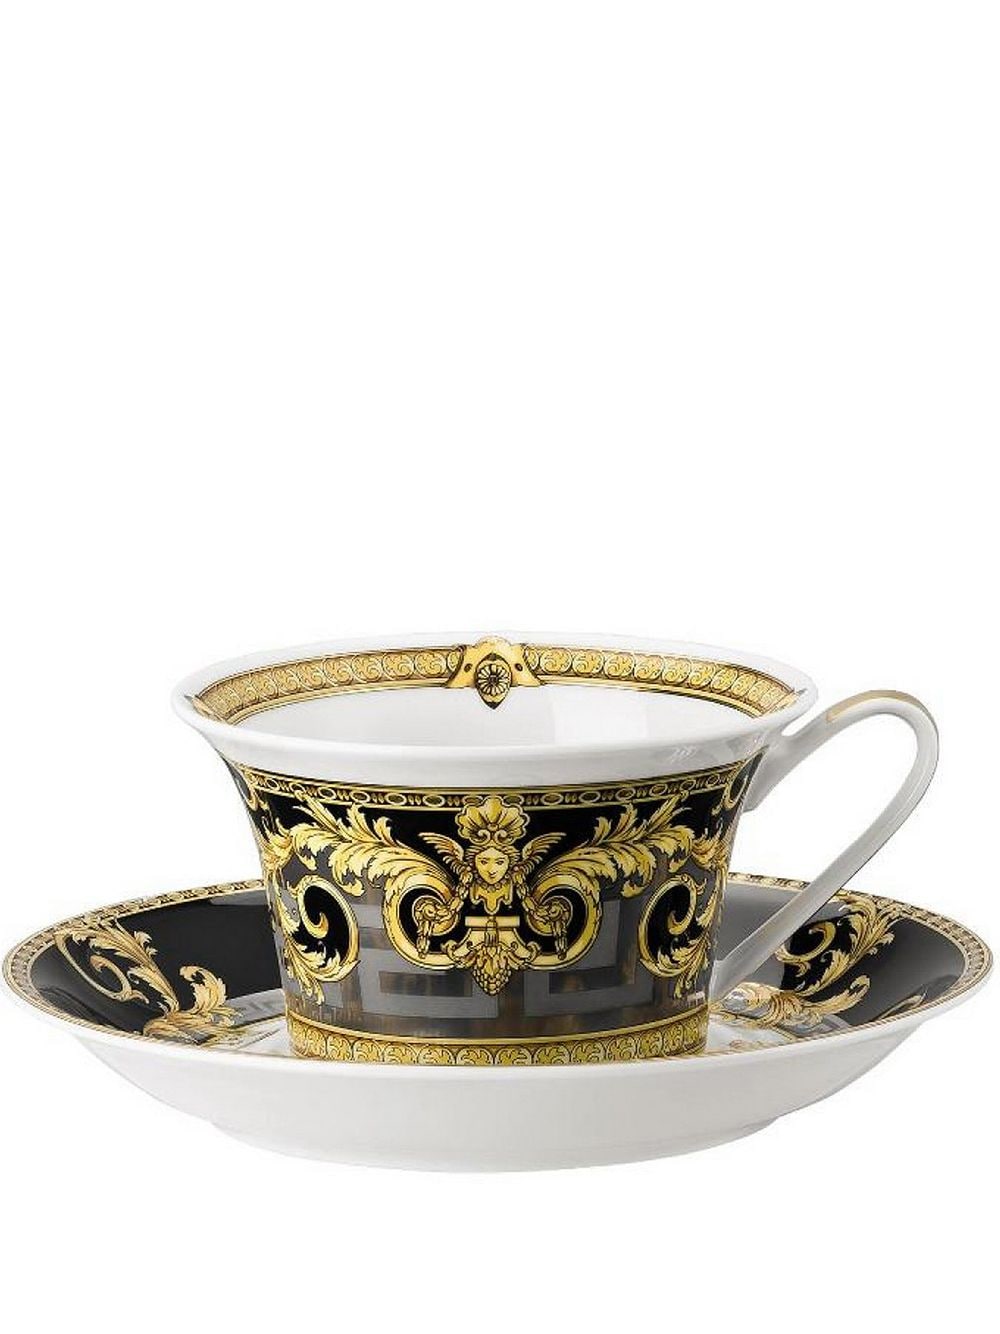 Versace x Rosenthal Prestige Gala teacup set - White von Versace